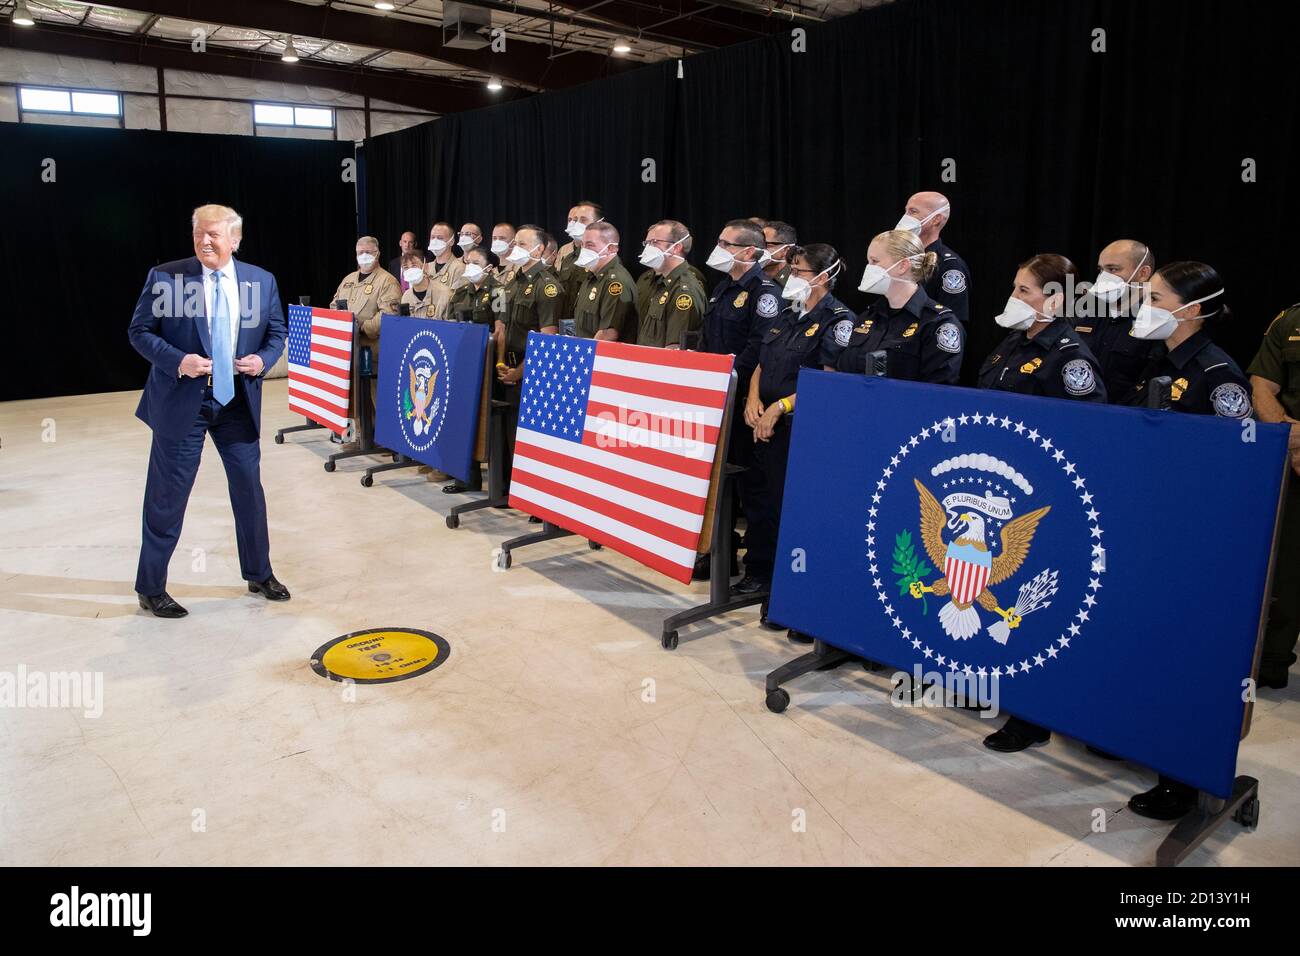 Am Dienstag, dem 18. August 2020, verkündeten Präsident Donald Trump, der amtierende DHS-Sekretär Chad Wolf, der amtierende CBP-Kommissar Mark Morgan und der stellvertretende Chef der US-Grenzpolizei Raul Ortiz bei einer Pressekonferenz in Yuma, Arizona, den Fortschritt des Grenzwandsystems Stockfoto